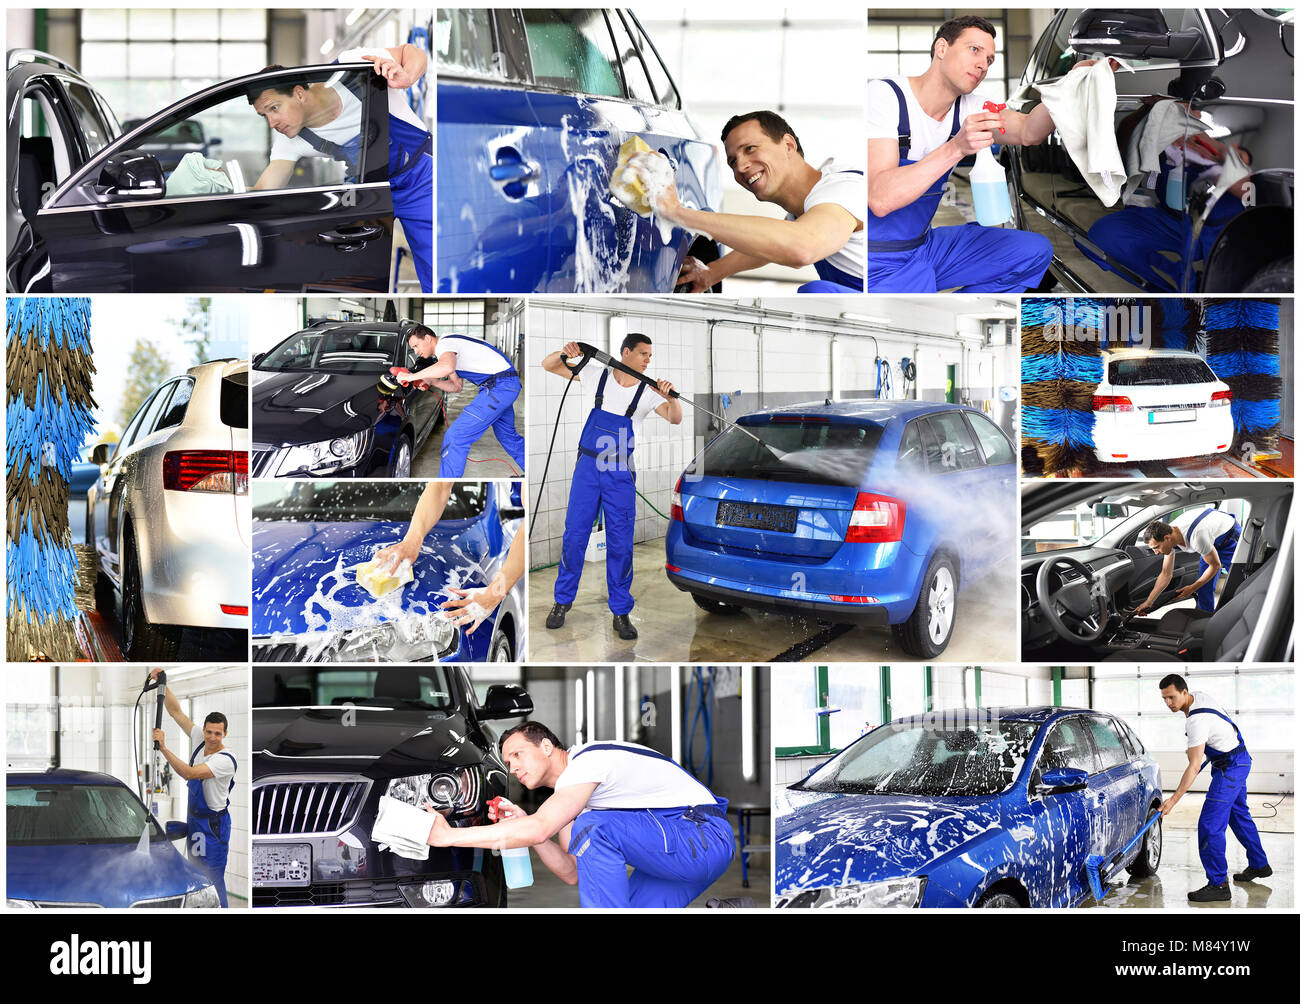 Lavage de voiture Collage - Employés d'un concessionnaire automobile nettoyer un véhicule par des professionnels Banque D'Images